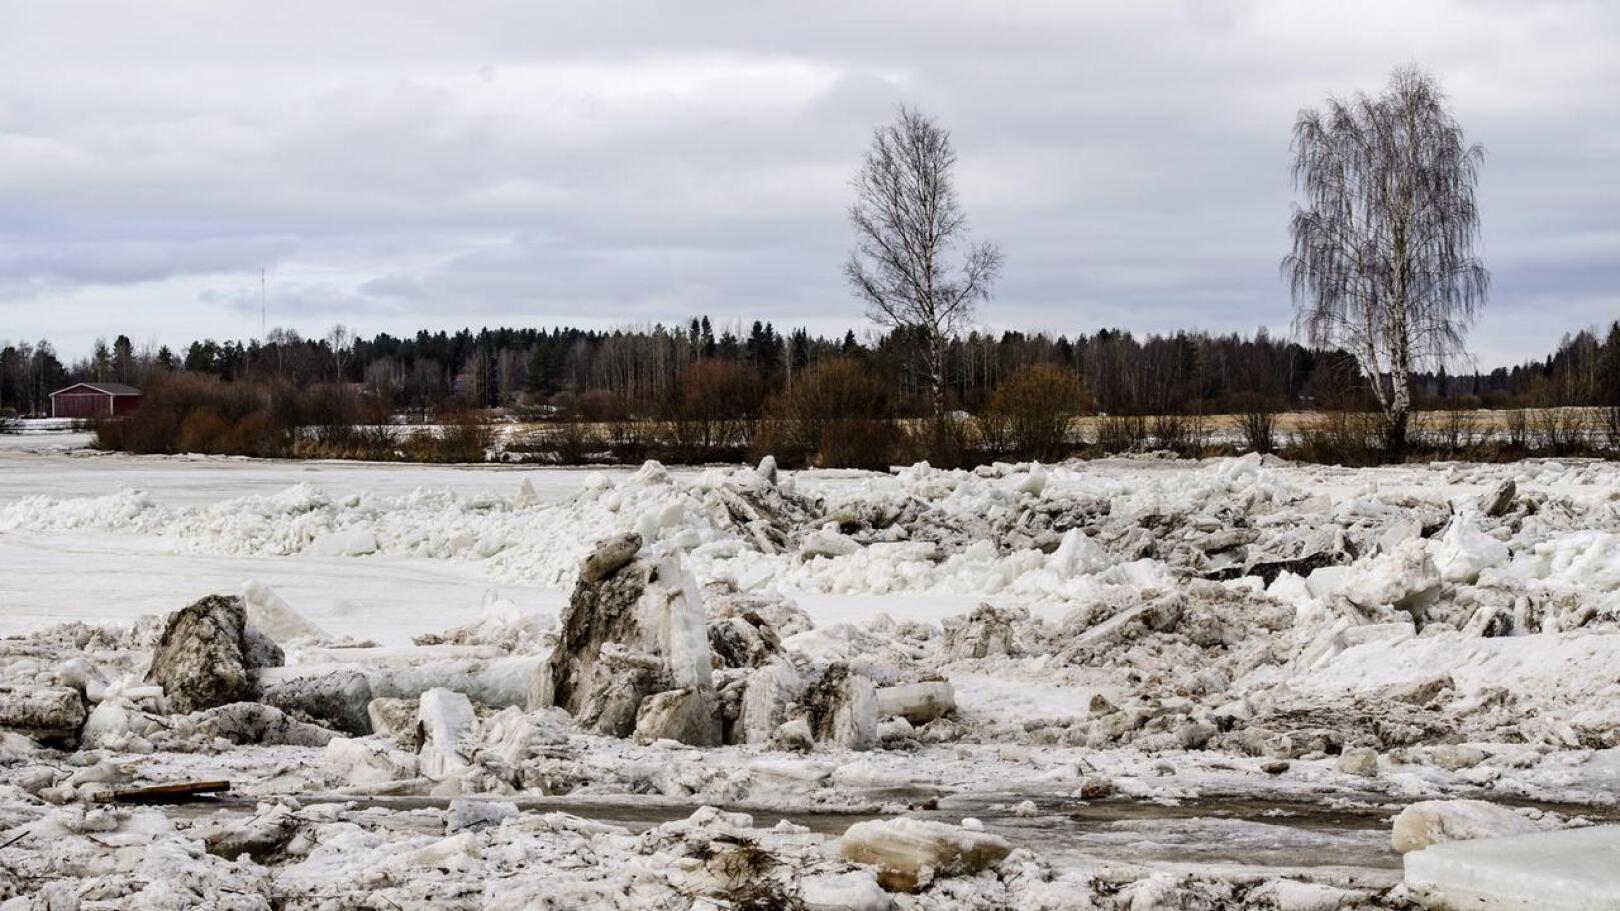 Pioneerit hälytettiin viime keväänä avuksi Alavieskaan. Toista kilometriä pitkää jääpatoa ei kuitenkaan ryhdytty räjäyttämään.  